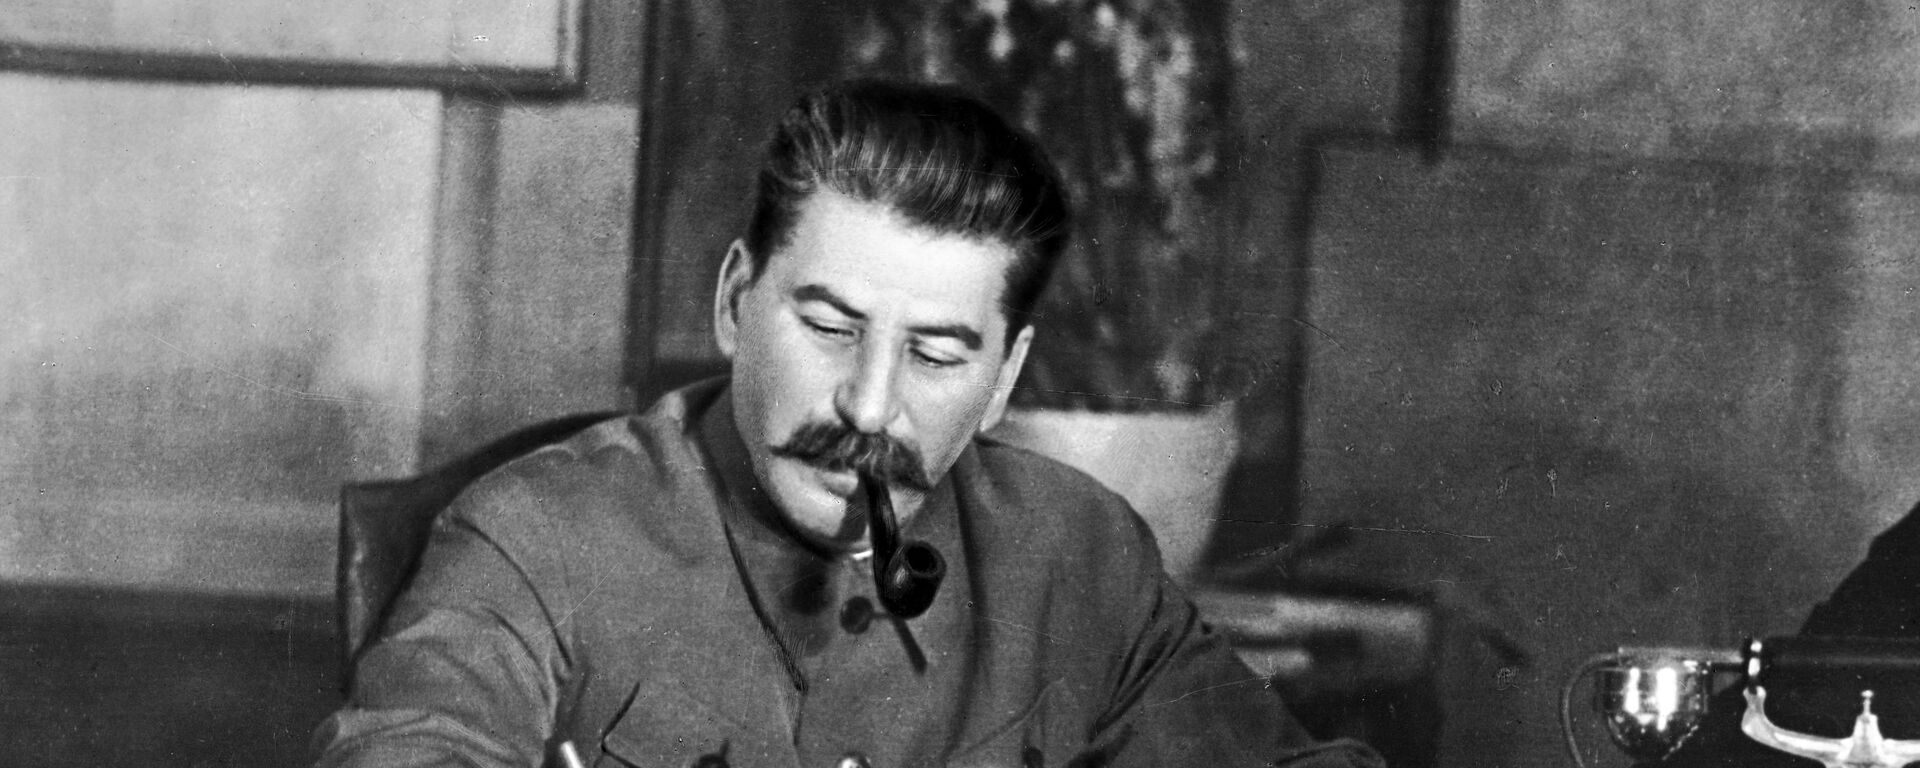 Iósif Stalin, secretario general del Comité Central del Partido Comunista de la Unión Soviética - Sputnik Mundo, 1920, 17.06.2017